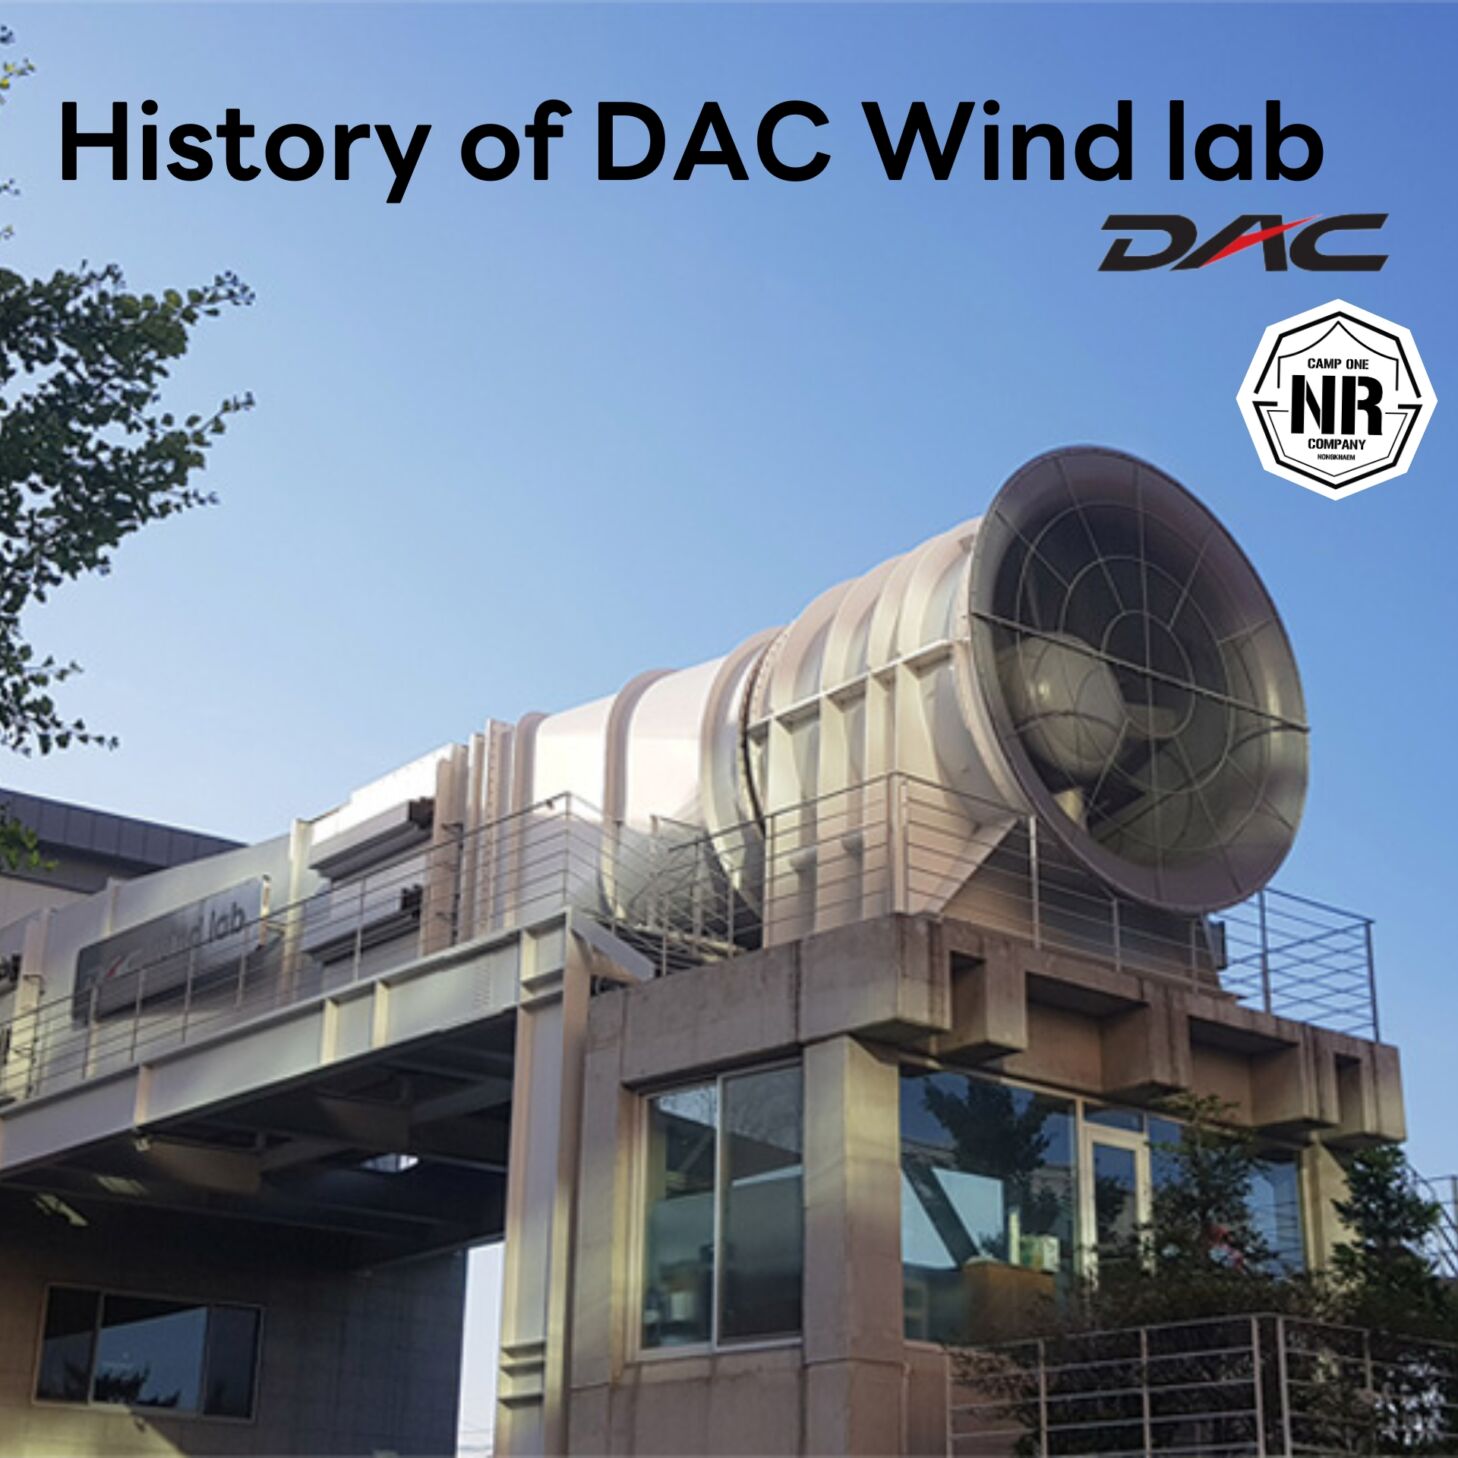 เรื่องราวของการสร้างอุโมงค์ลม History of DAC Wind lab